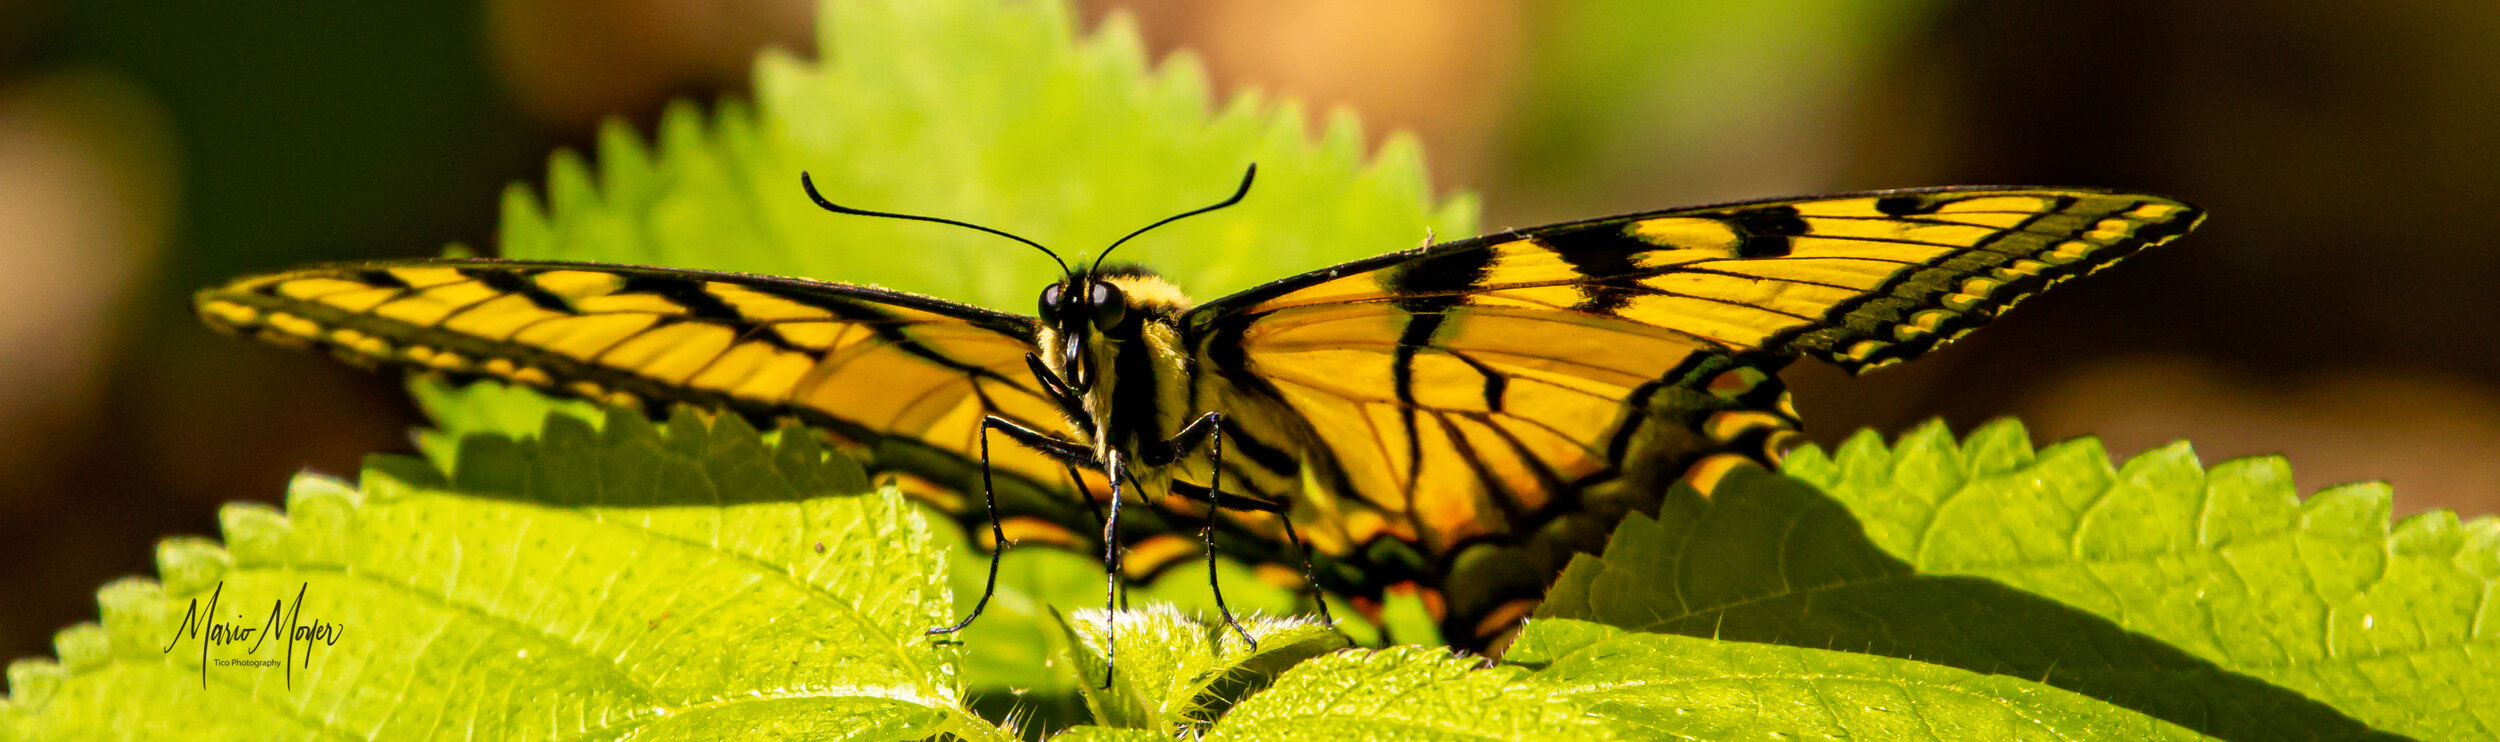 Golden Butterfly.jpg